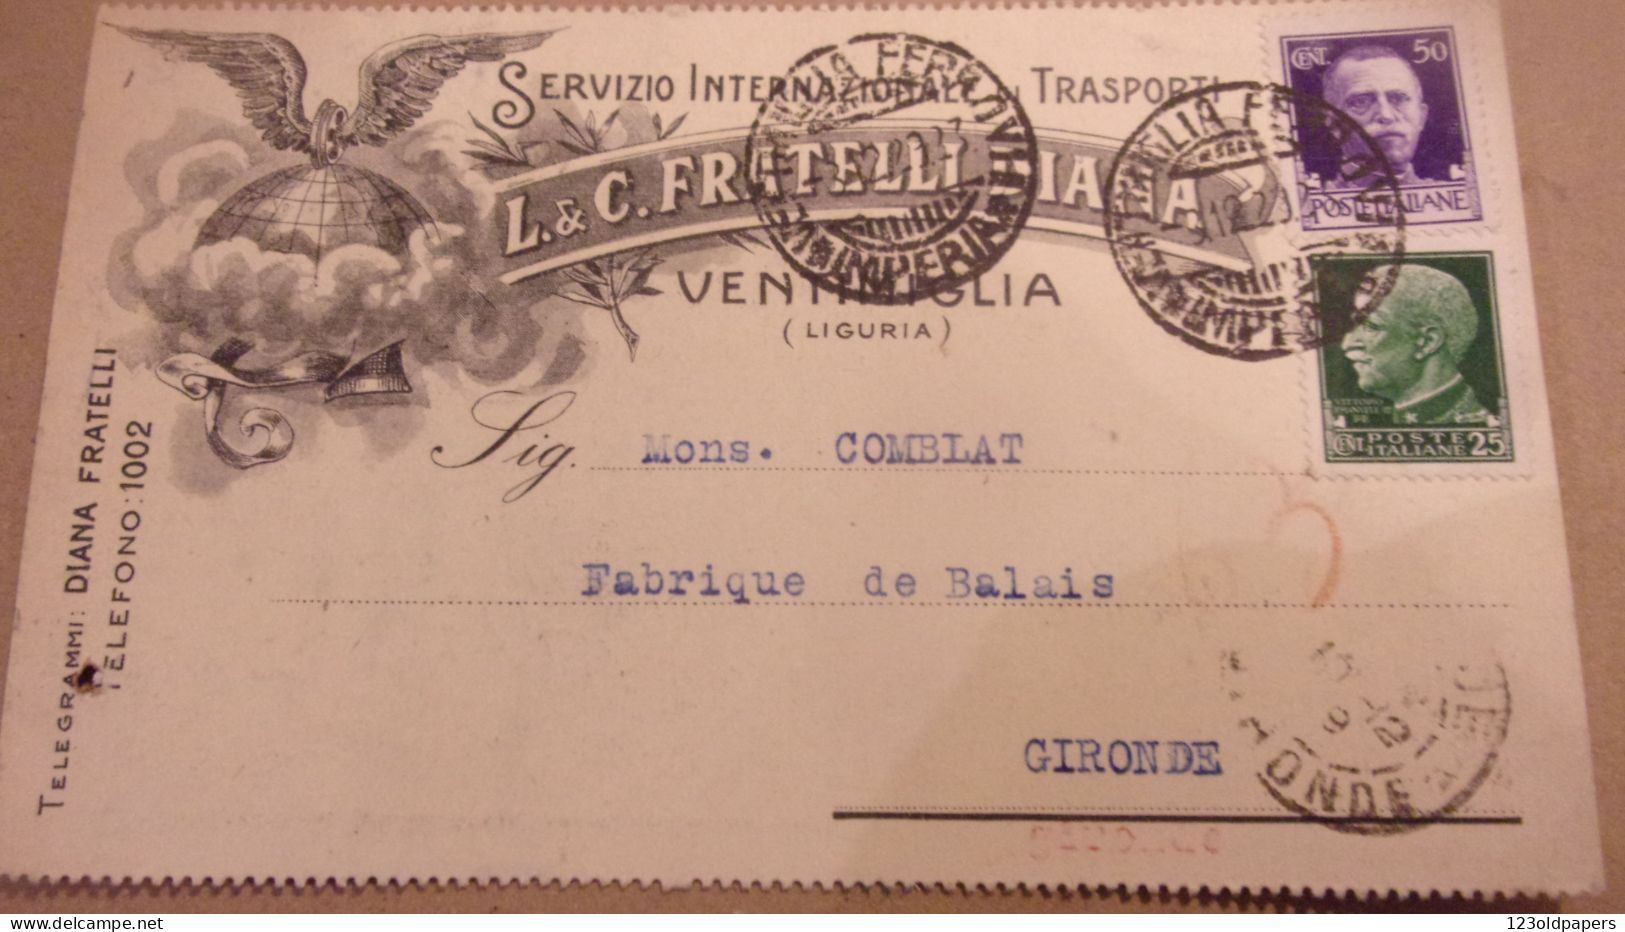 VENTIMIGLIA - IMPERIA - CARTOLINA COMMERCIALE "L.& C. FRATELLI DIANA" TRASPORTI INTERNAZIONALI - 1929 - Marcophilie